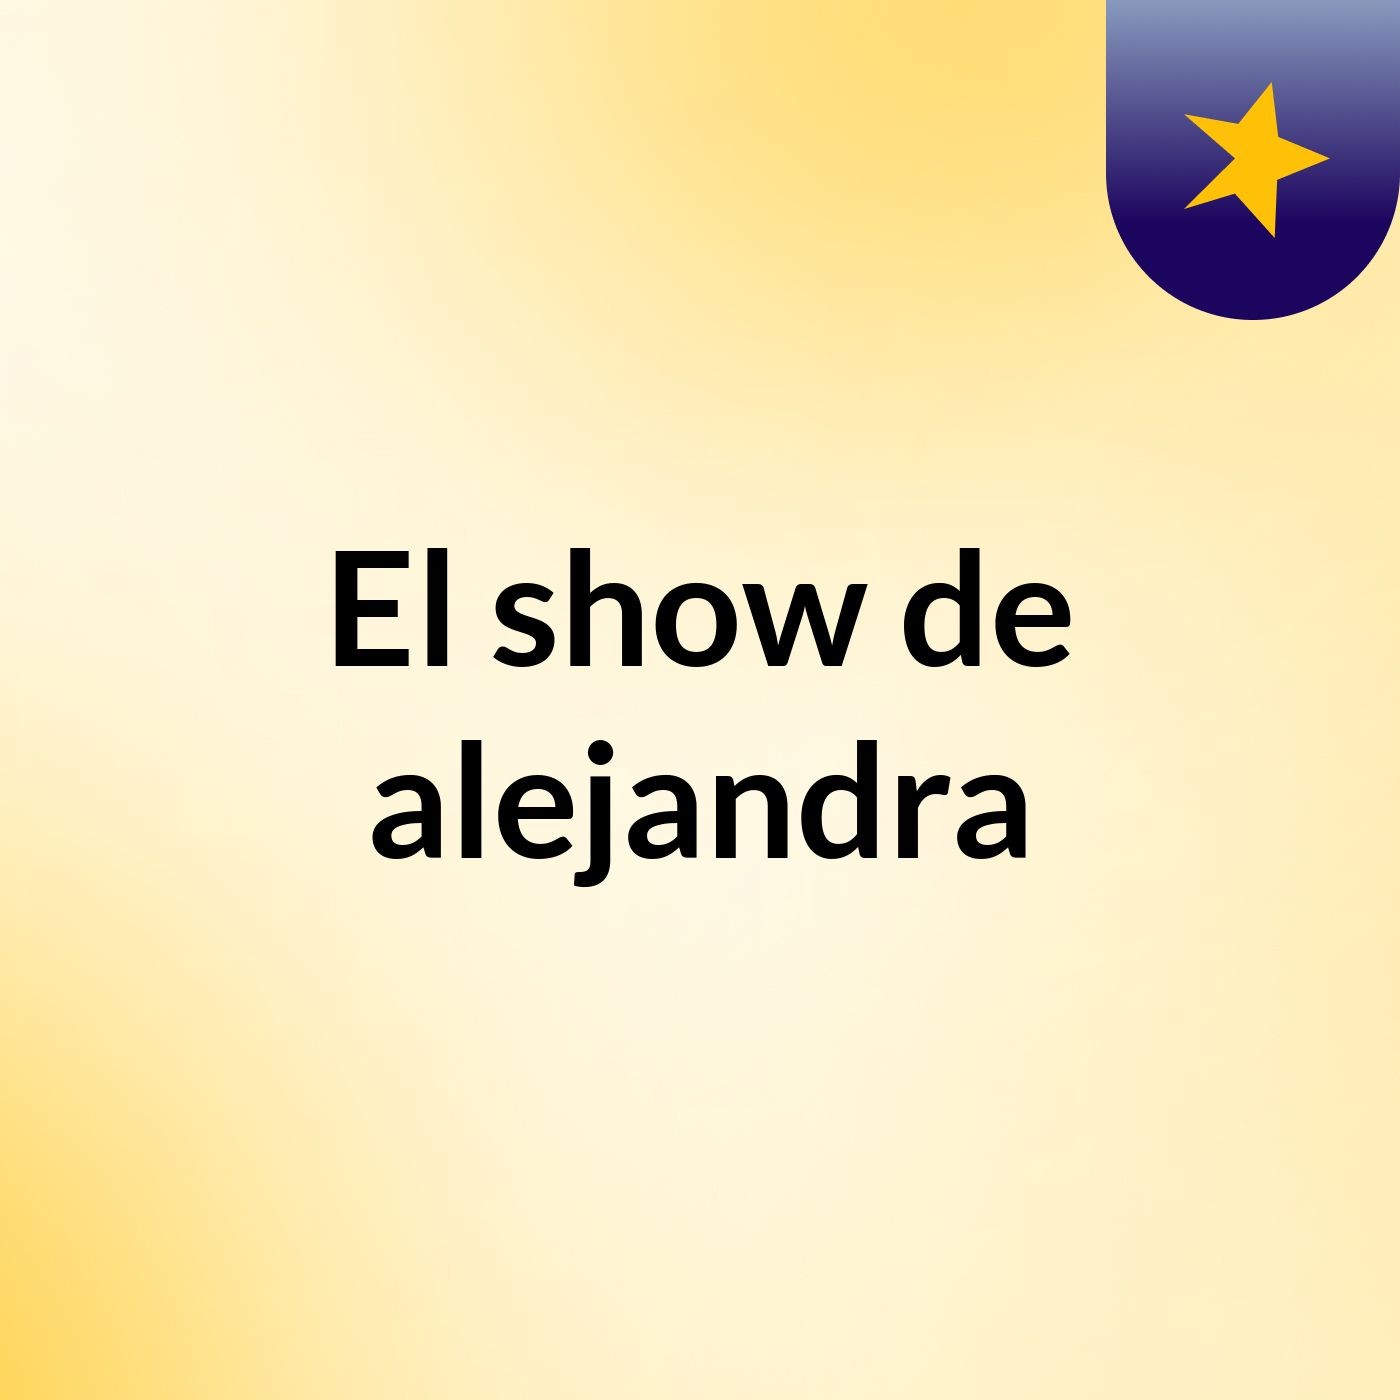 El show de alejandra